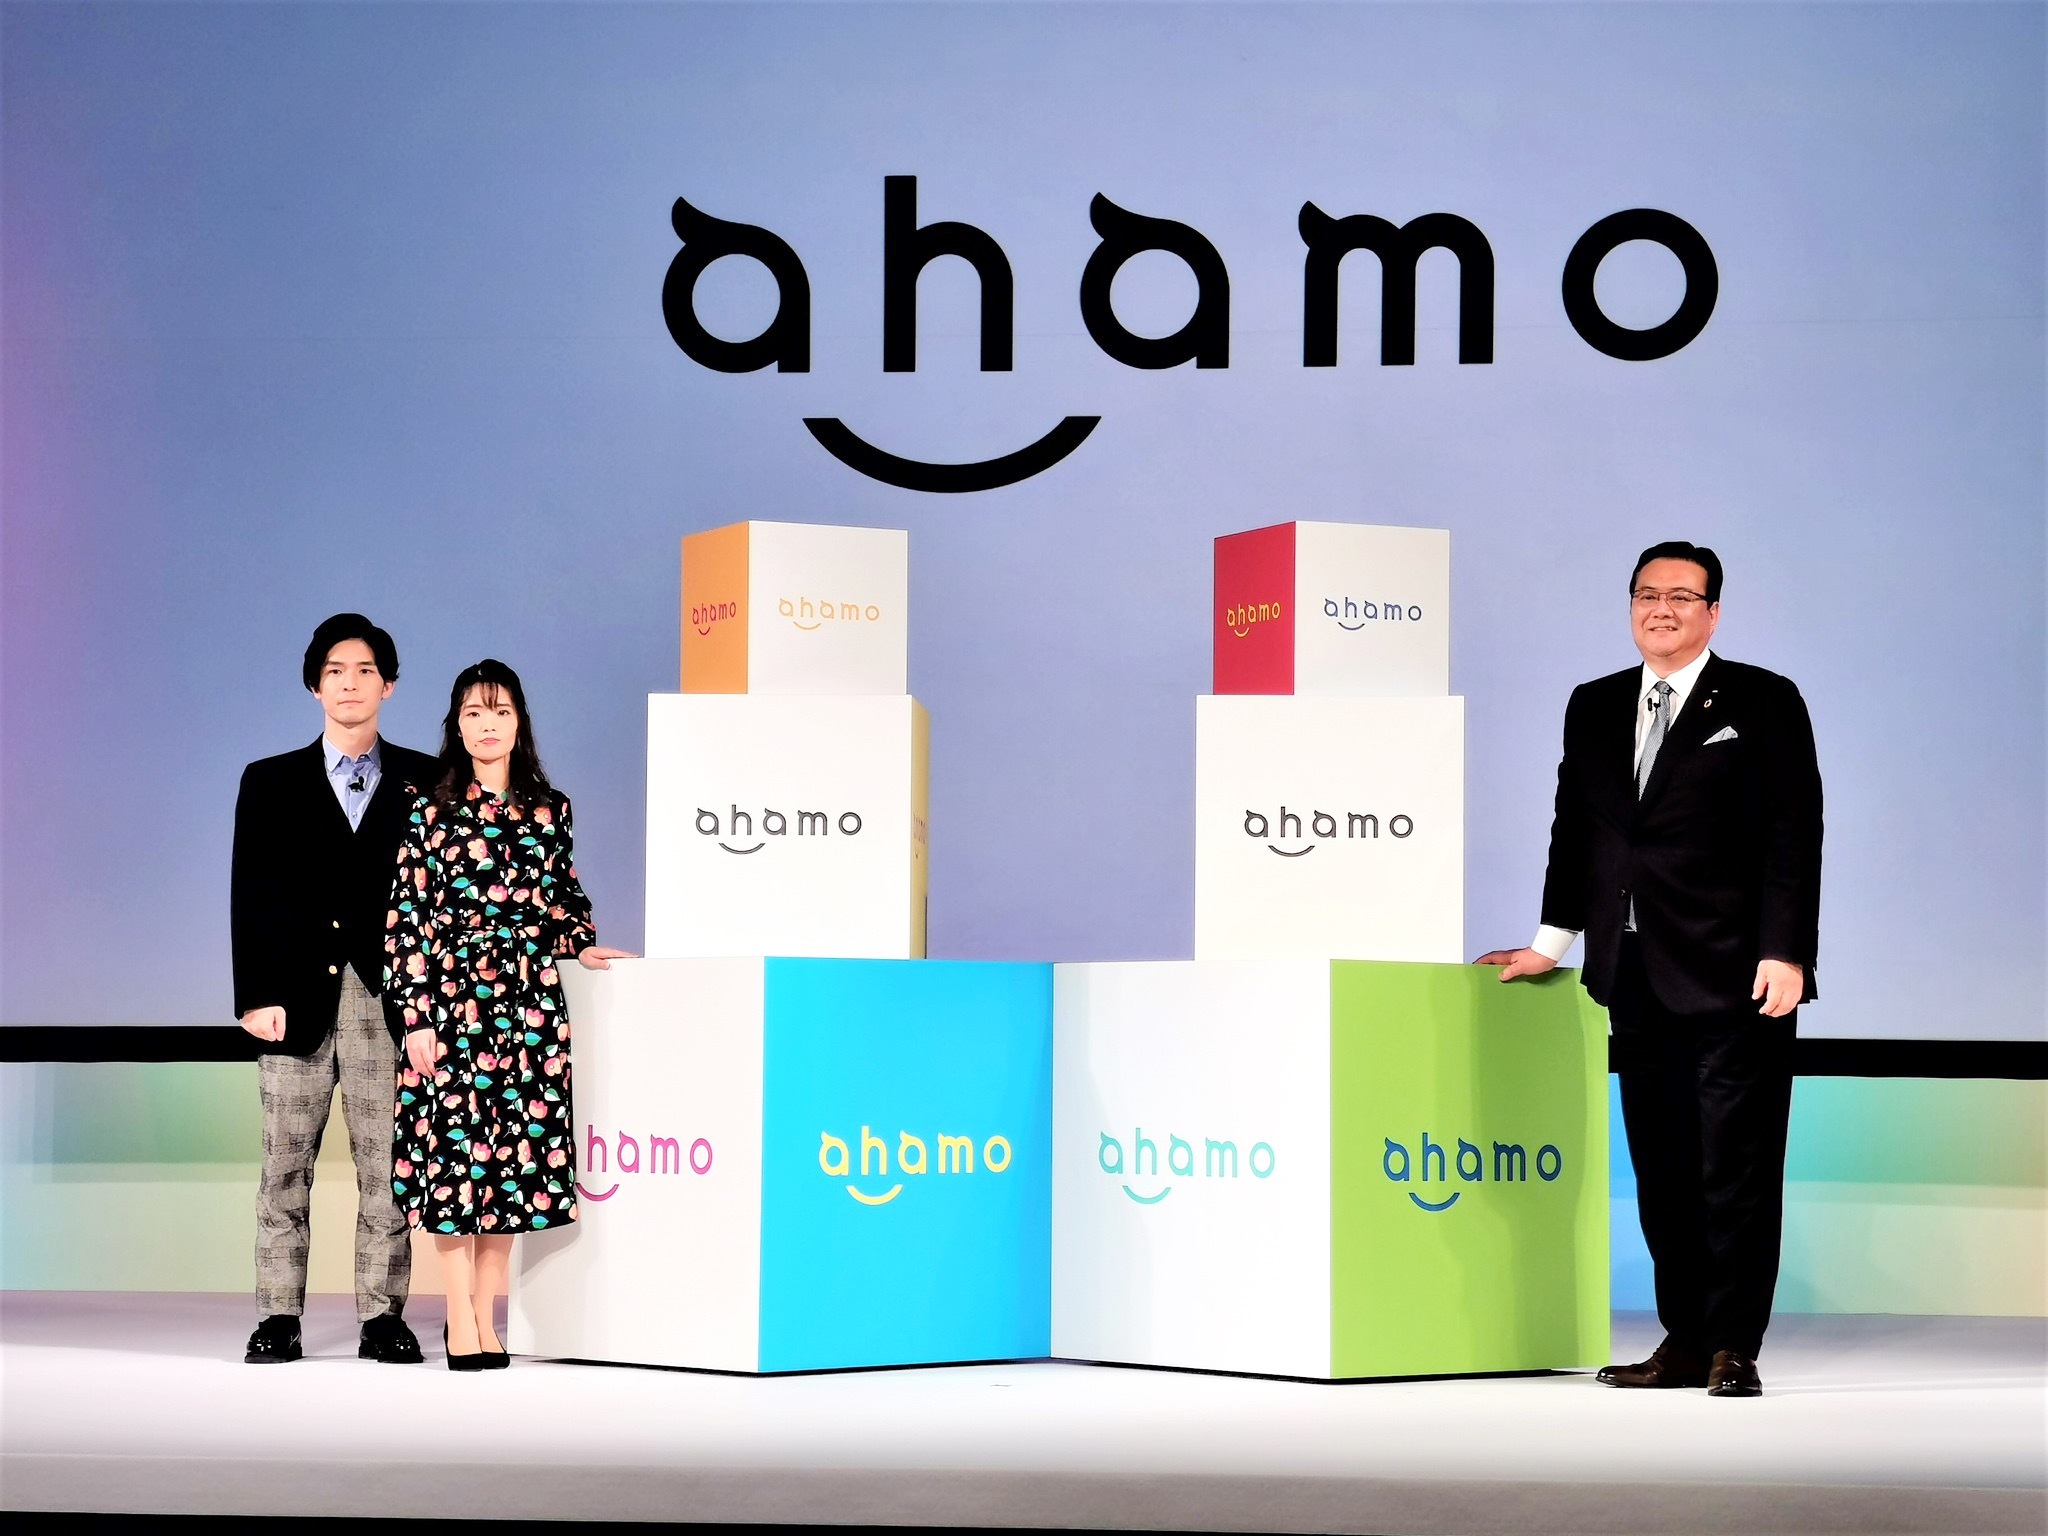 ドコモが新たに発表した料金プラン「ahamo」。月額2980円で20GBの高速データ通信が可能であるなど、圧倒的なコストパフォーマンスで大きな注目を集めた